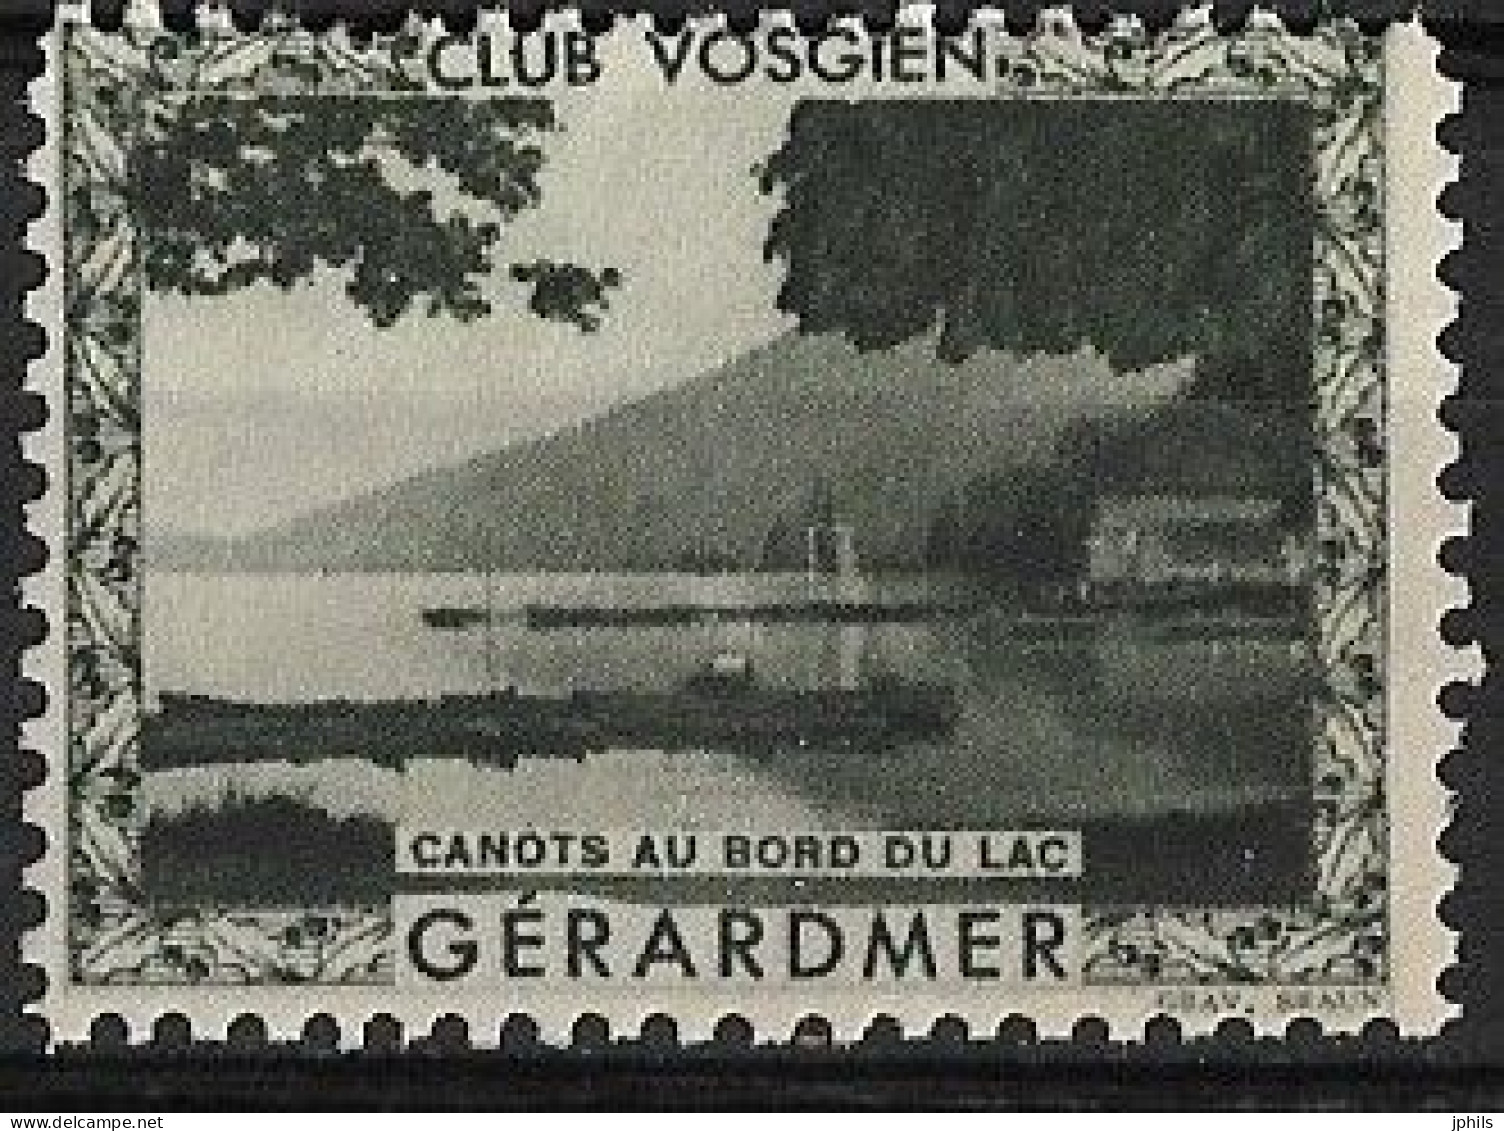 CLUB VOSGIEN GERARDMER ** CANOTS AU BORD DU LAC - Tourism (Labels)